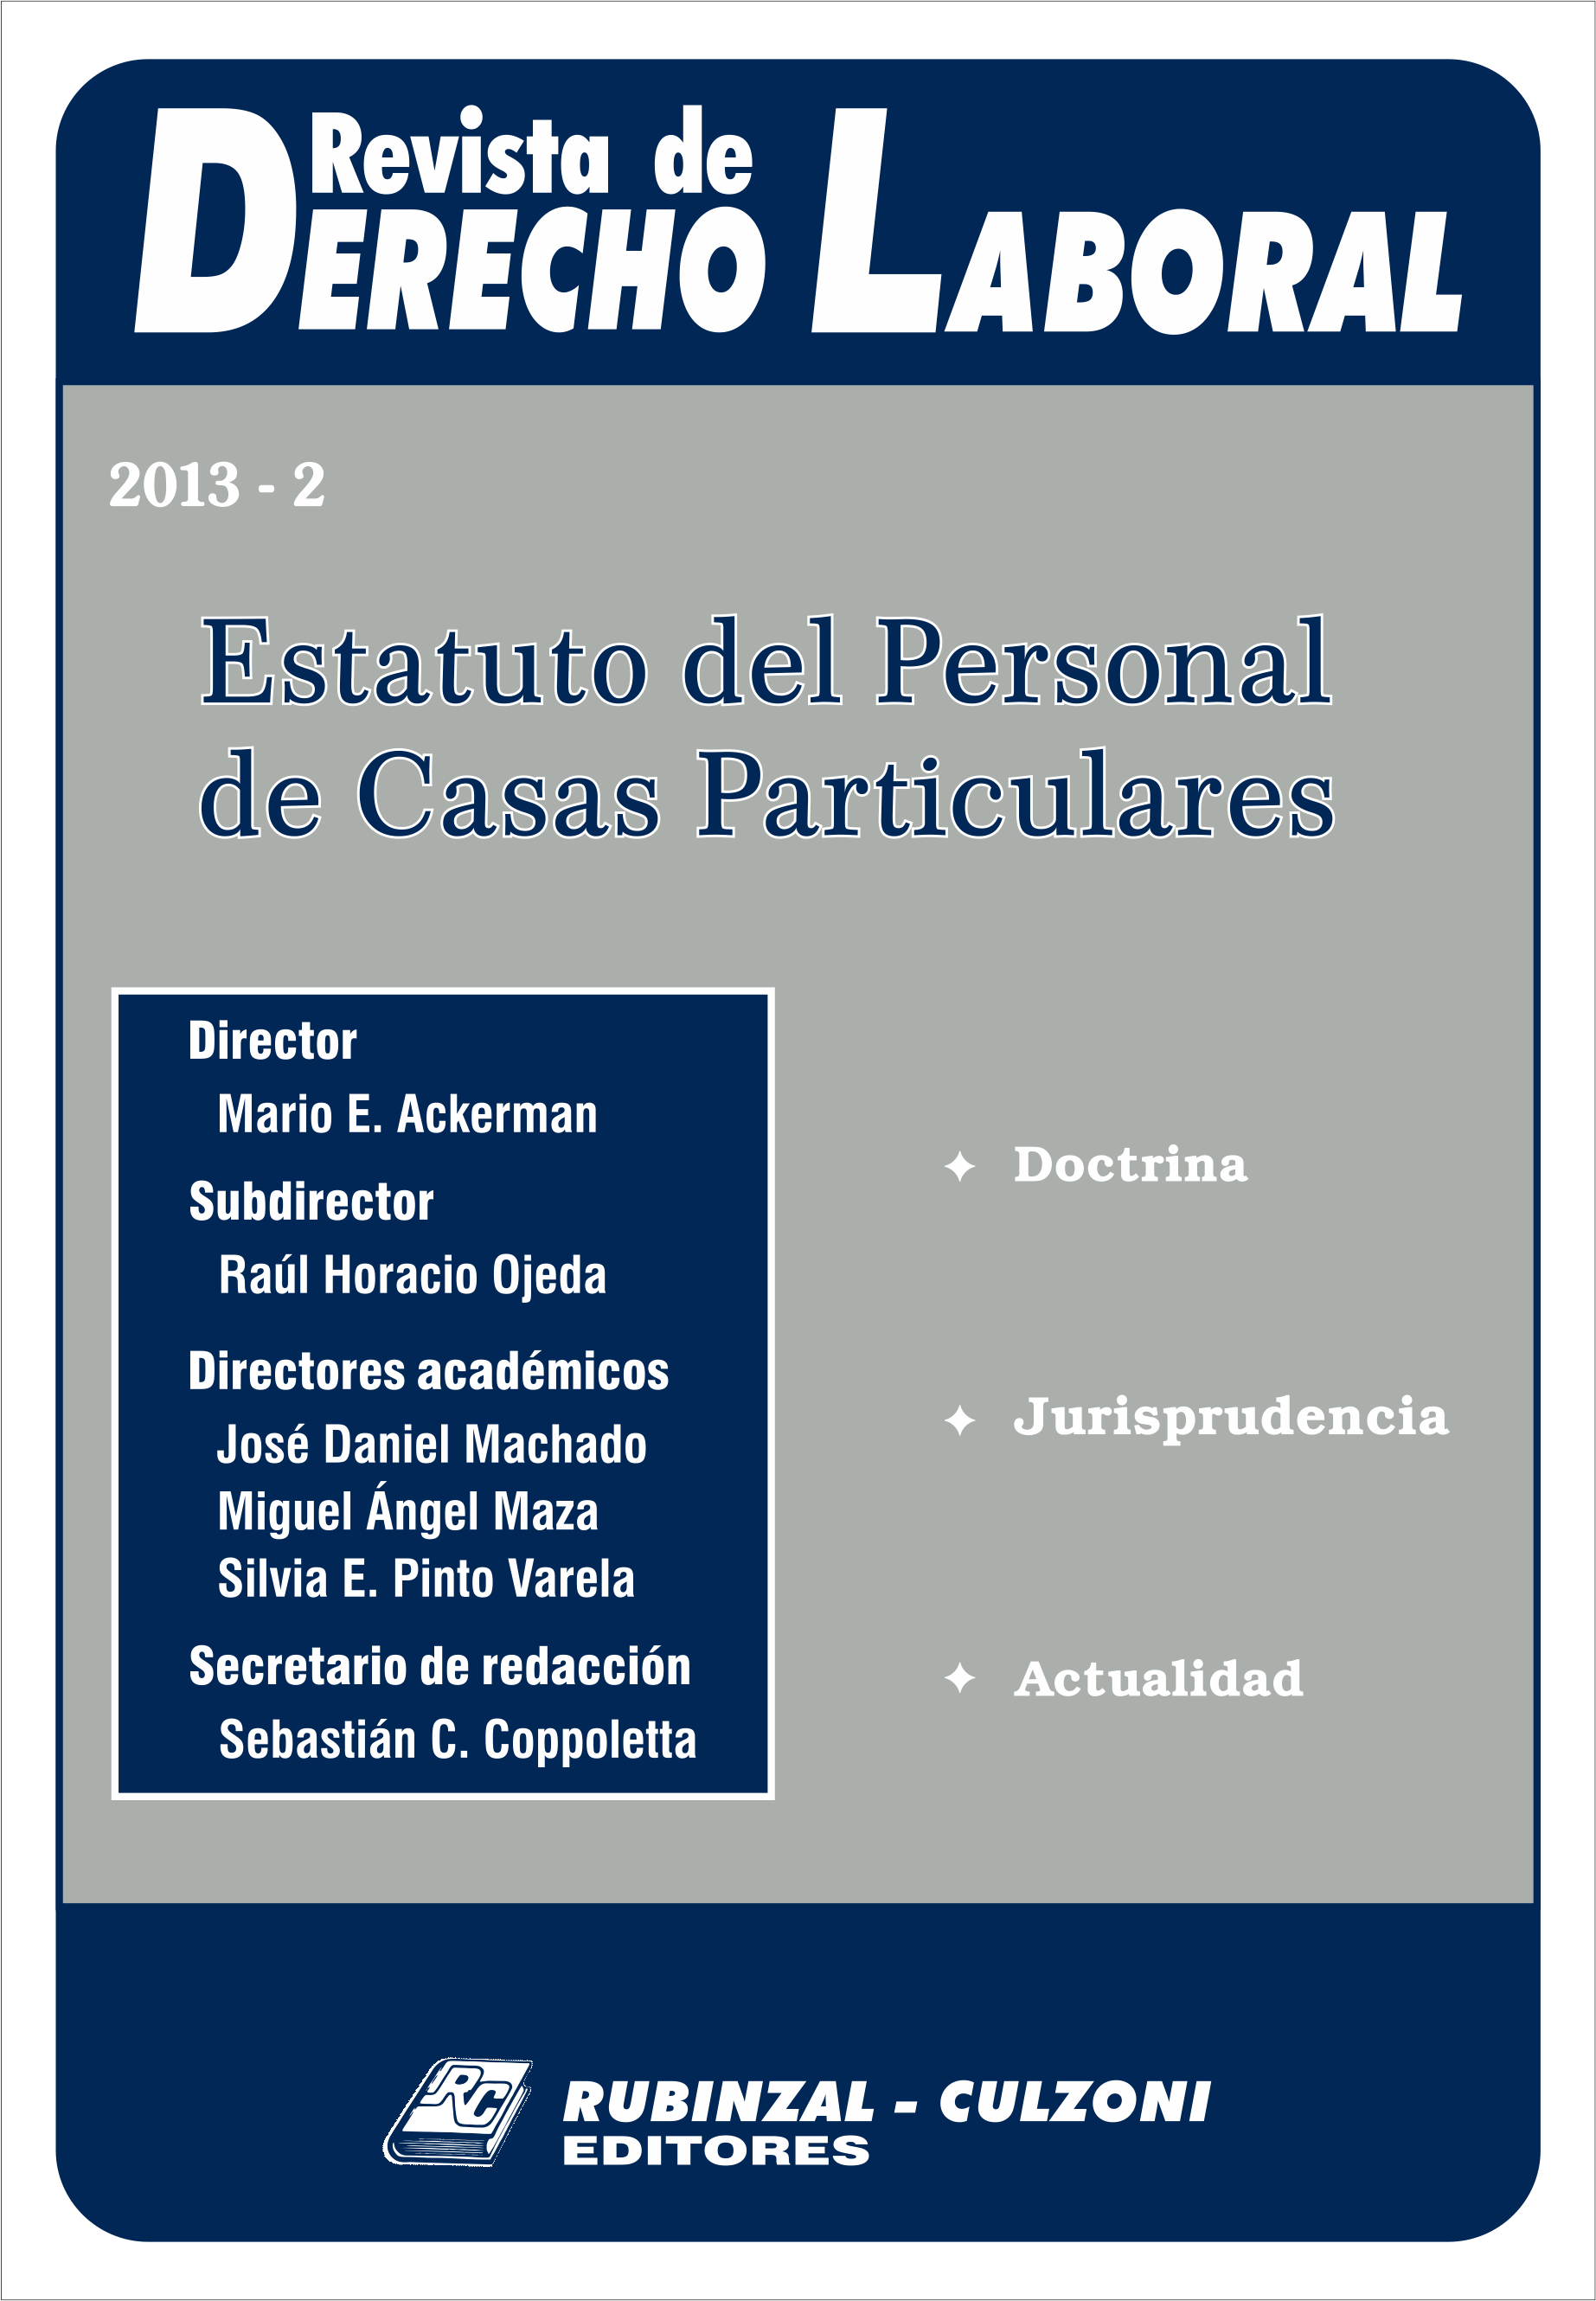 Revista de Derecho Laboral - Estatuto del Personal de Casas Particulares